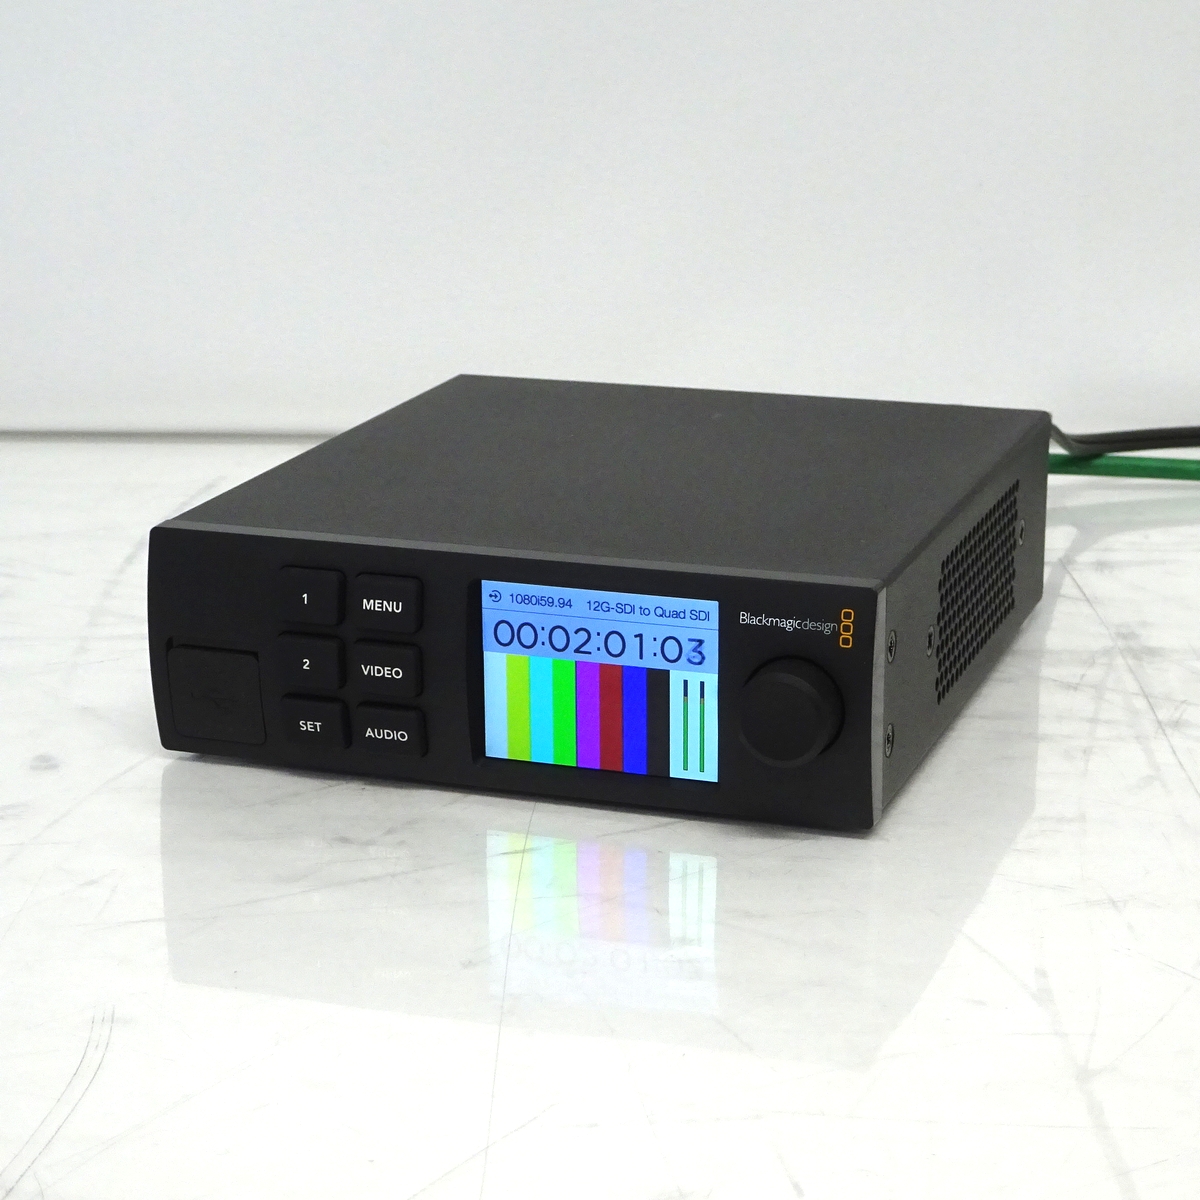 【中古】Blackmagic Design Teranex Mini 12G-SDI to Quad SDI コンバーター Smart Panel付き【愛知発送1】